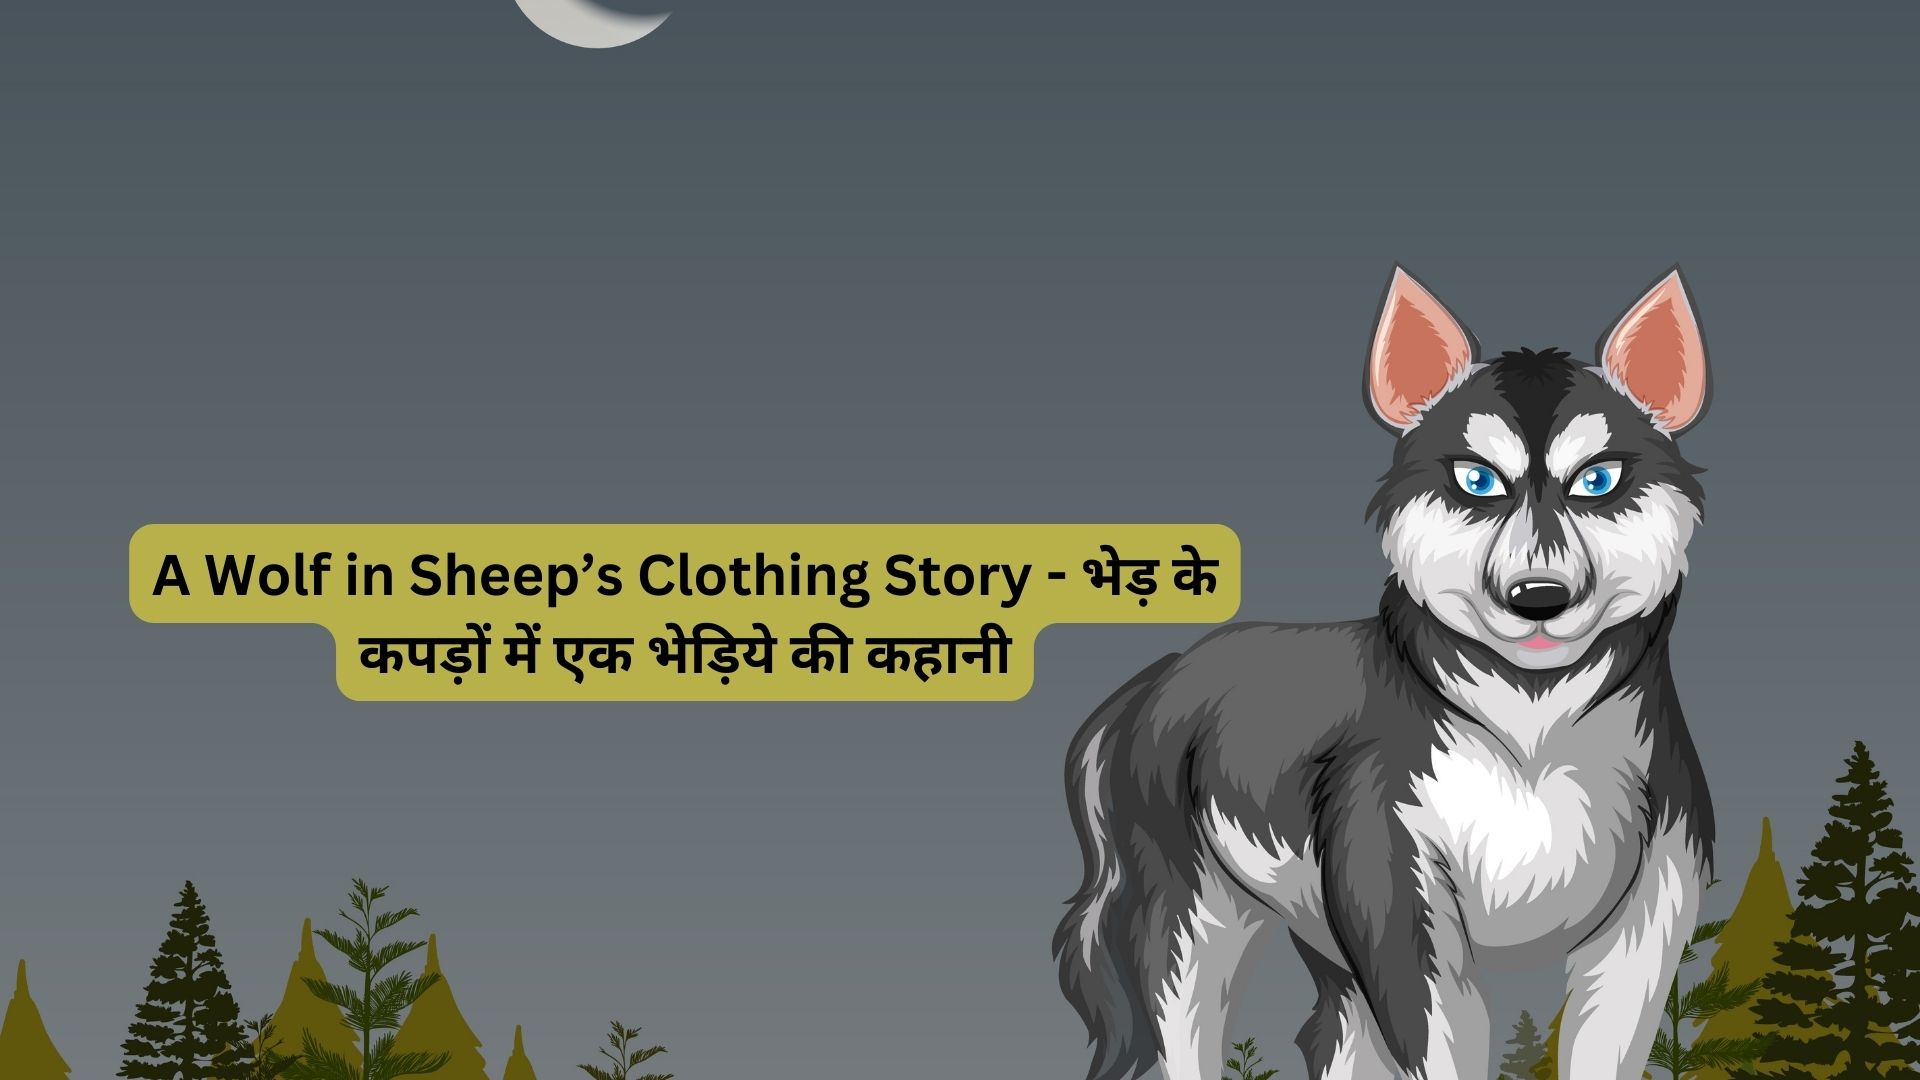 A-Wolf-in-Sheeps-Clothing-Story-भेड़-के-कपड़ों-में-एक-भेड़िये-की-कहानी